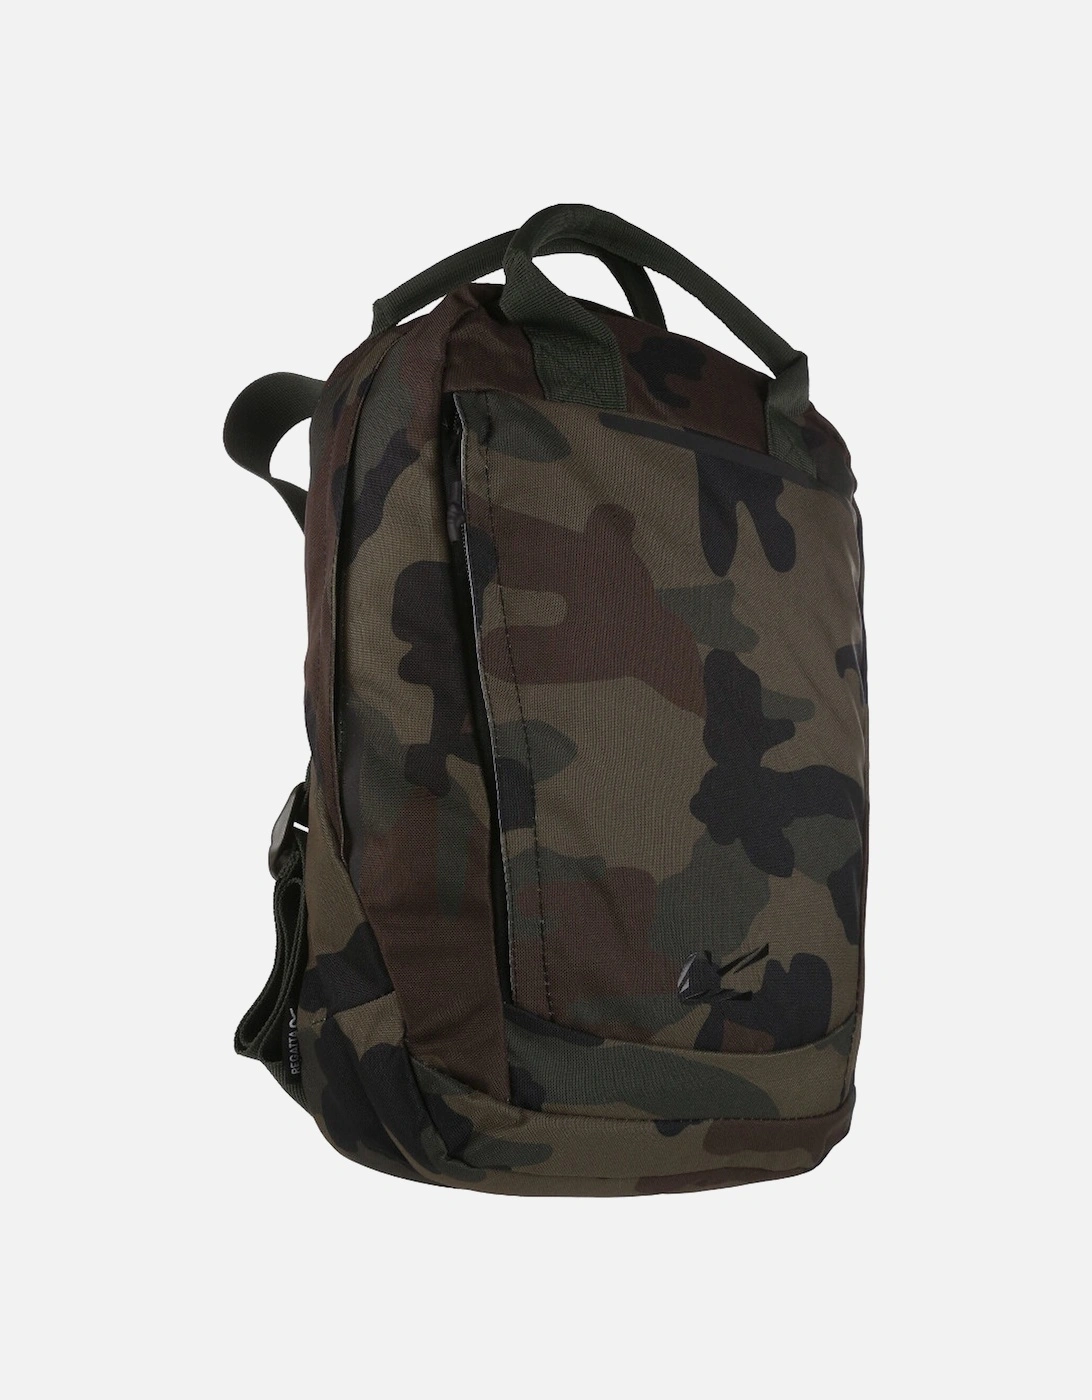 Shilton 12 Litre Adjustable Rucksack Backpack Bag